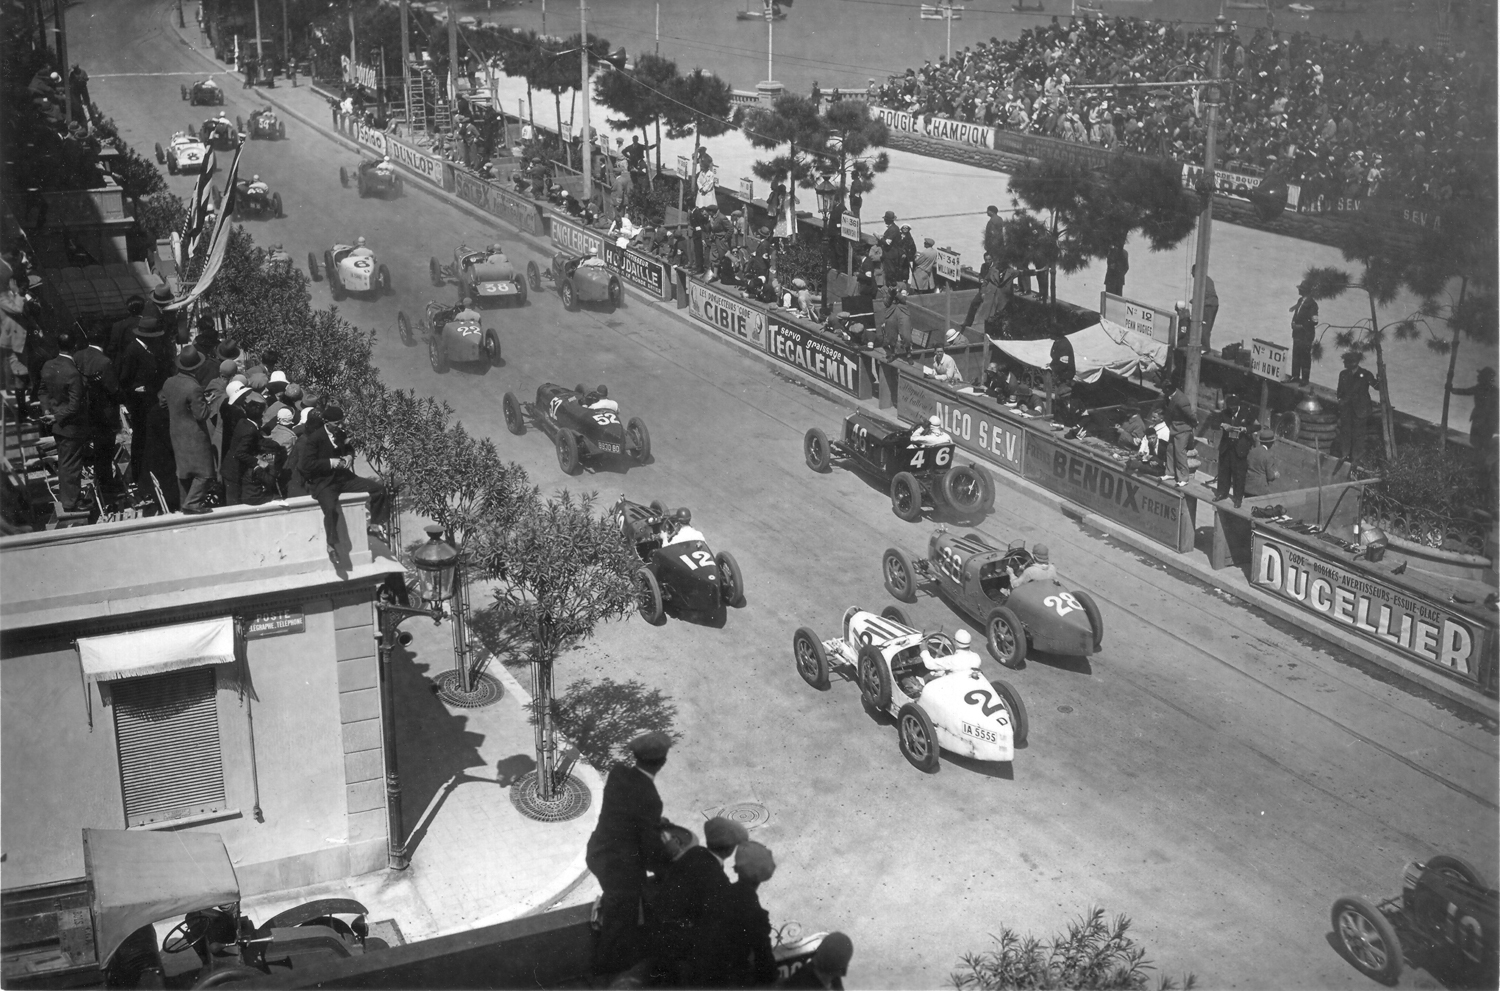 The Bugatti Type 51 at the 1931 Monaco Grand Prix. 